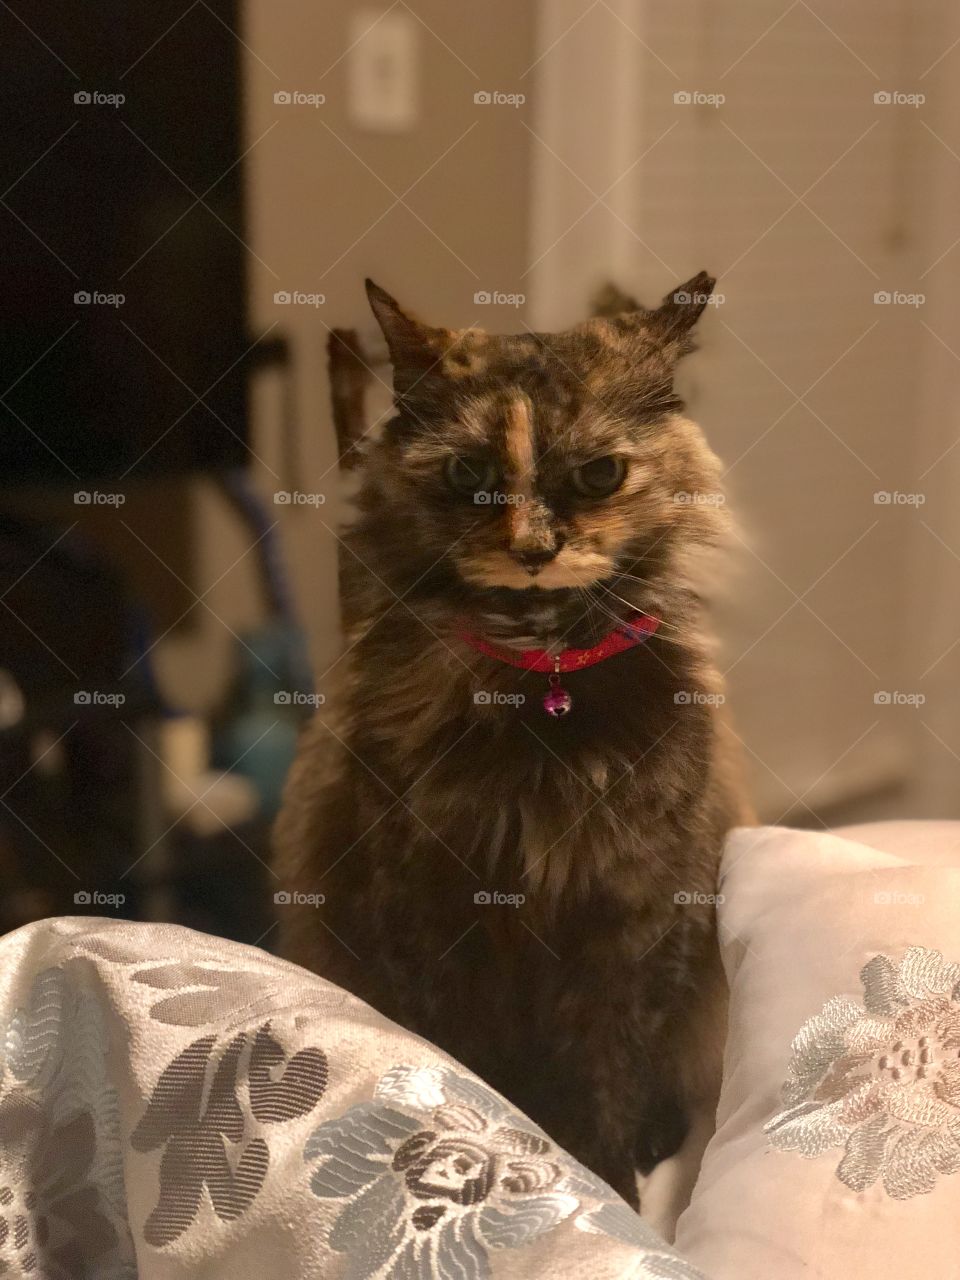 Suara cat posing for a portrait